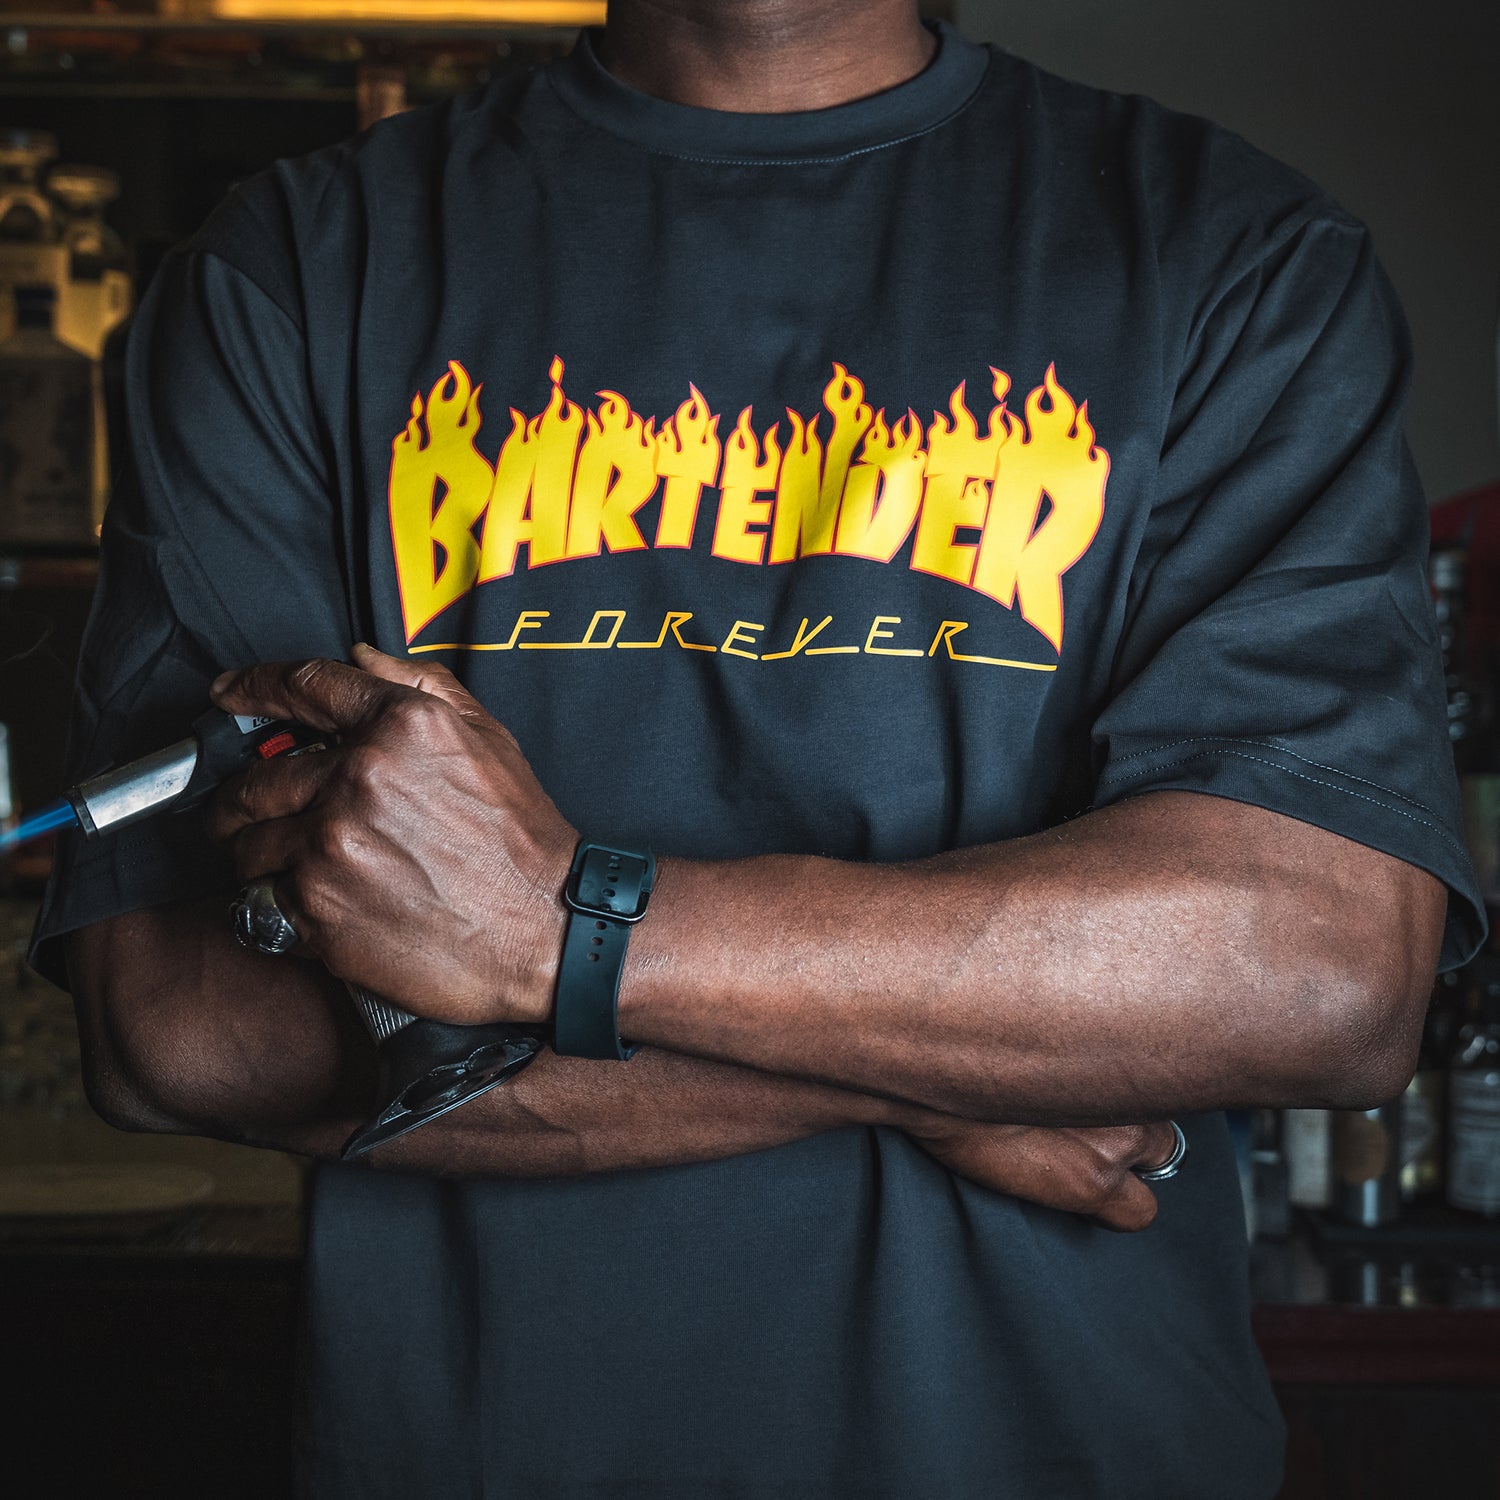 Bartender Forever T-Shirt by Broken Bartender